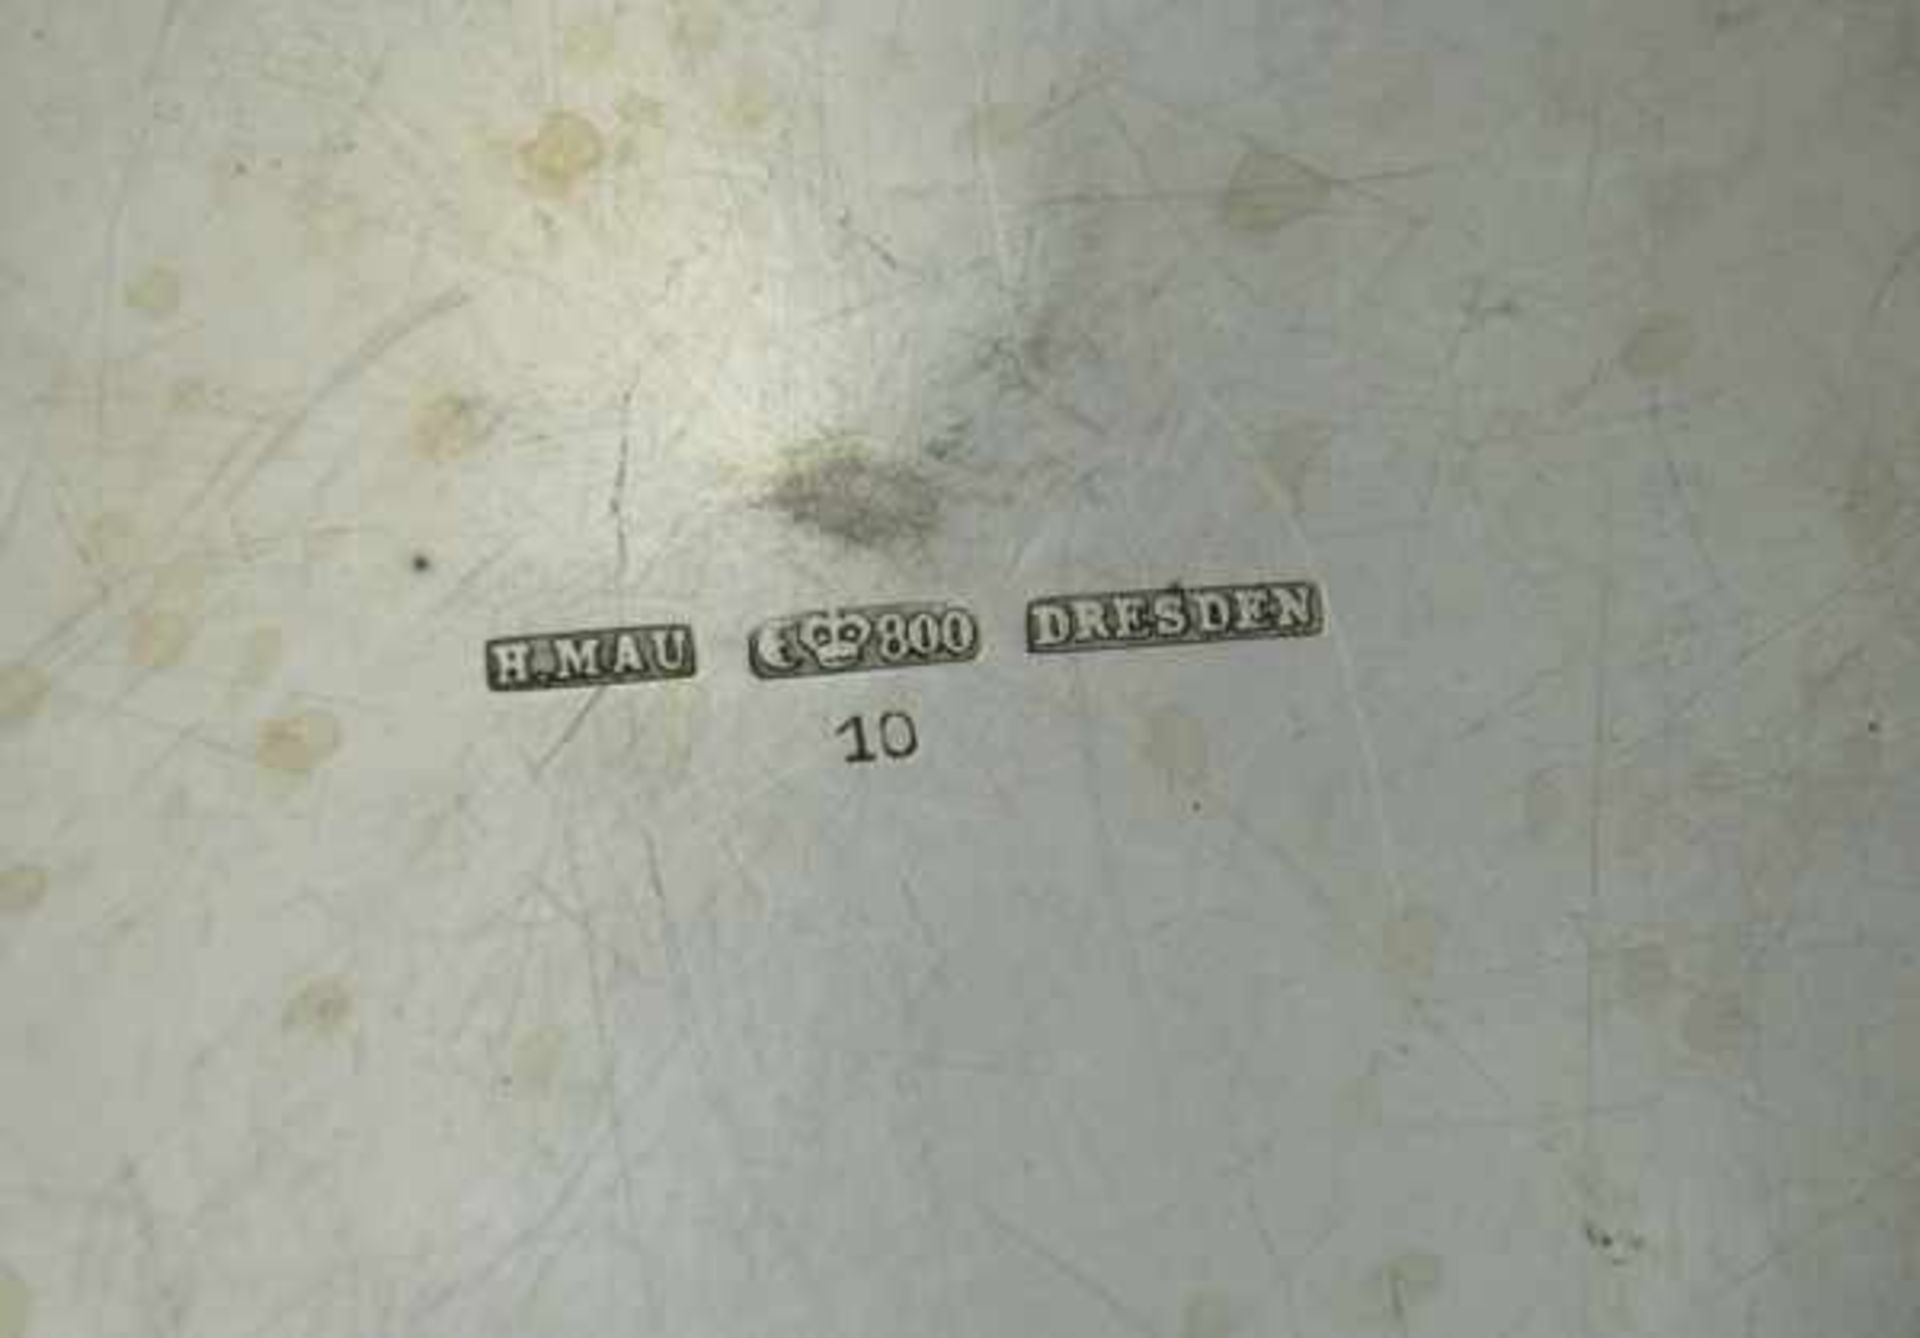 TABLETT rund, passig-geschweifte getreppte Ränder, H. Mau, Dresden, Silber 800, 539gr, D 26,5cm - Image 2 of 2